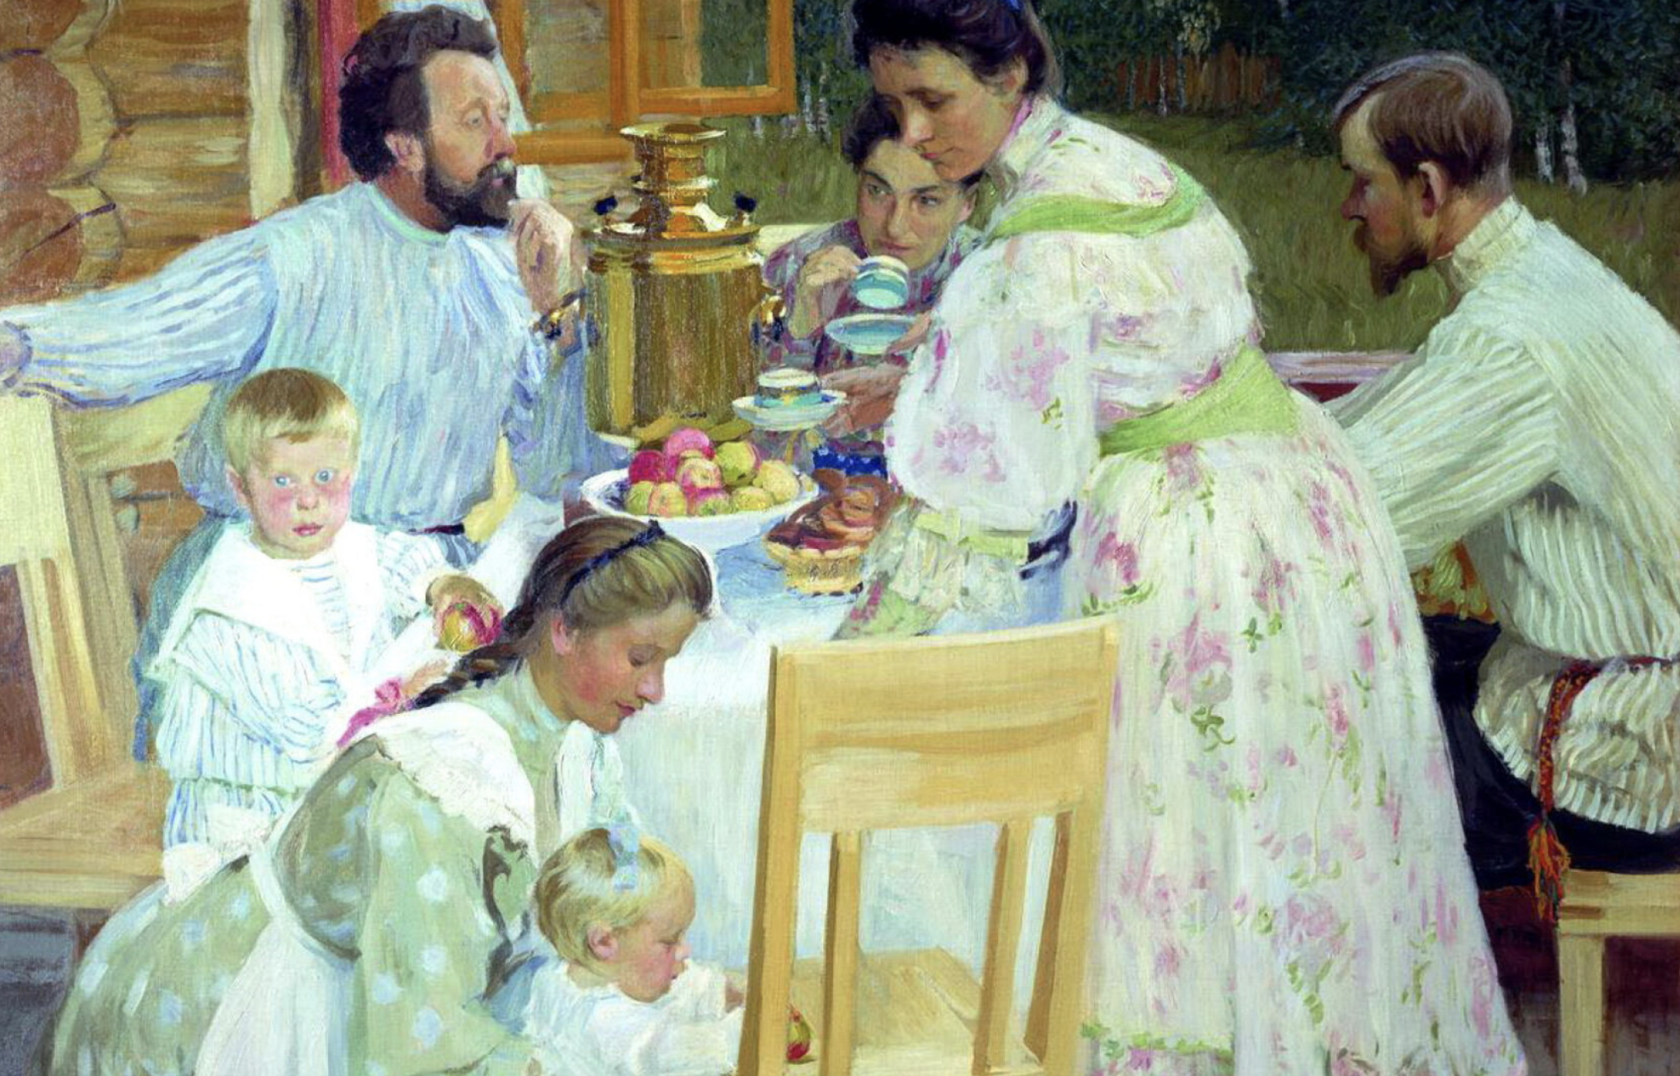 Сочинение за чаепитием. Б. М. Кустодиев. На террасе. 1906.